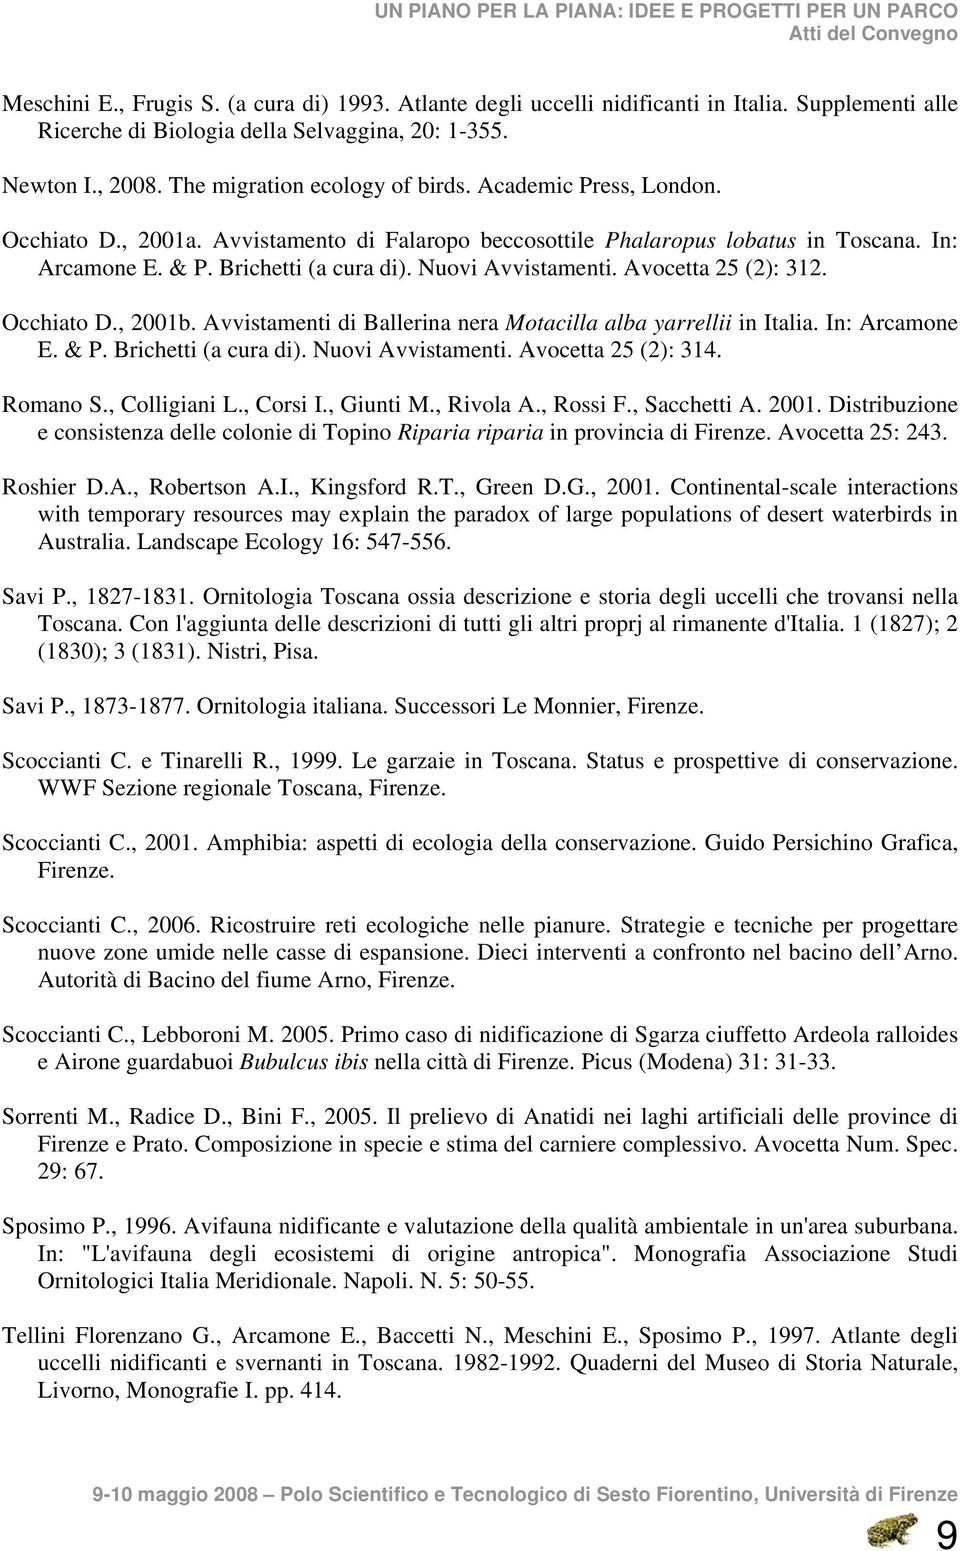 Nuovi Avvistamenti. Avocetta 25 (2): 312. Occhiato D., 2001b. Avvistamenti di Ballerina nera Motacilla alba yarrellii in Italia. In: Arcamone E. & P. Brichetti (a cura di). Nuovi Avvistamenti.